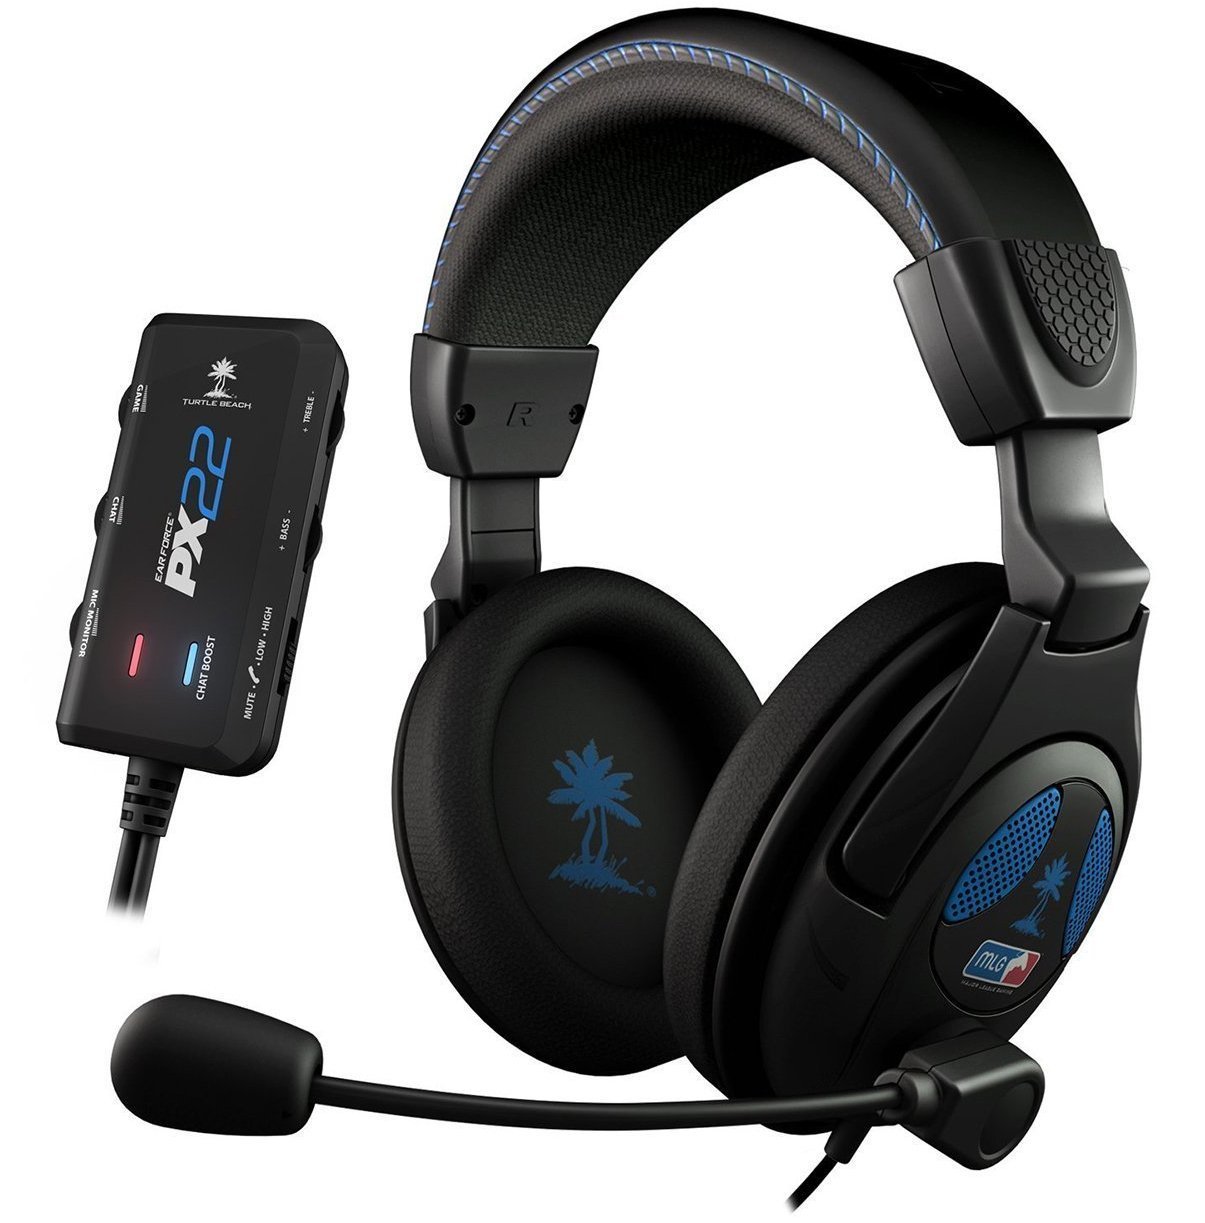 Casque audio Turtle Beach PX22 pour PS3, Xbox 360 et PC à 29 euros